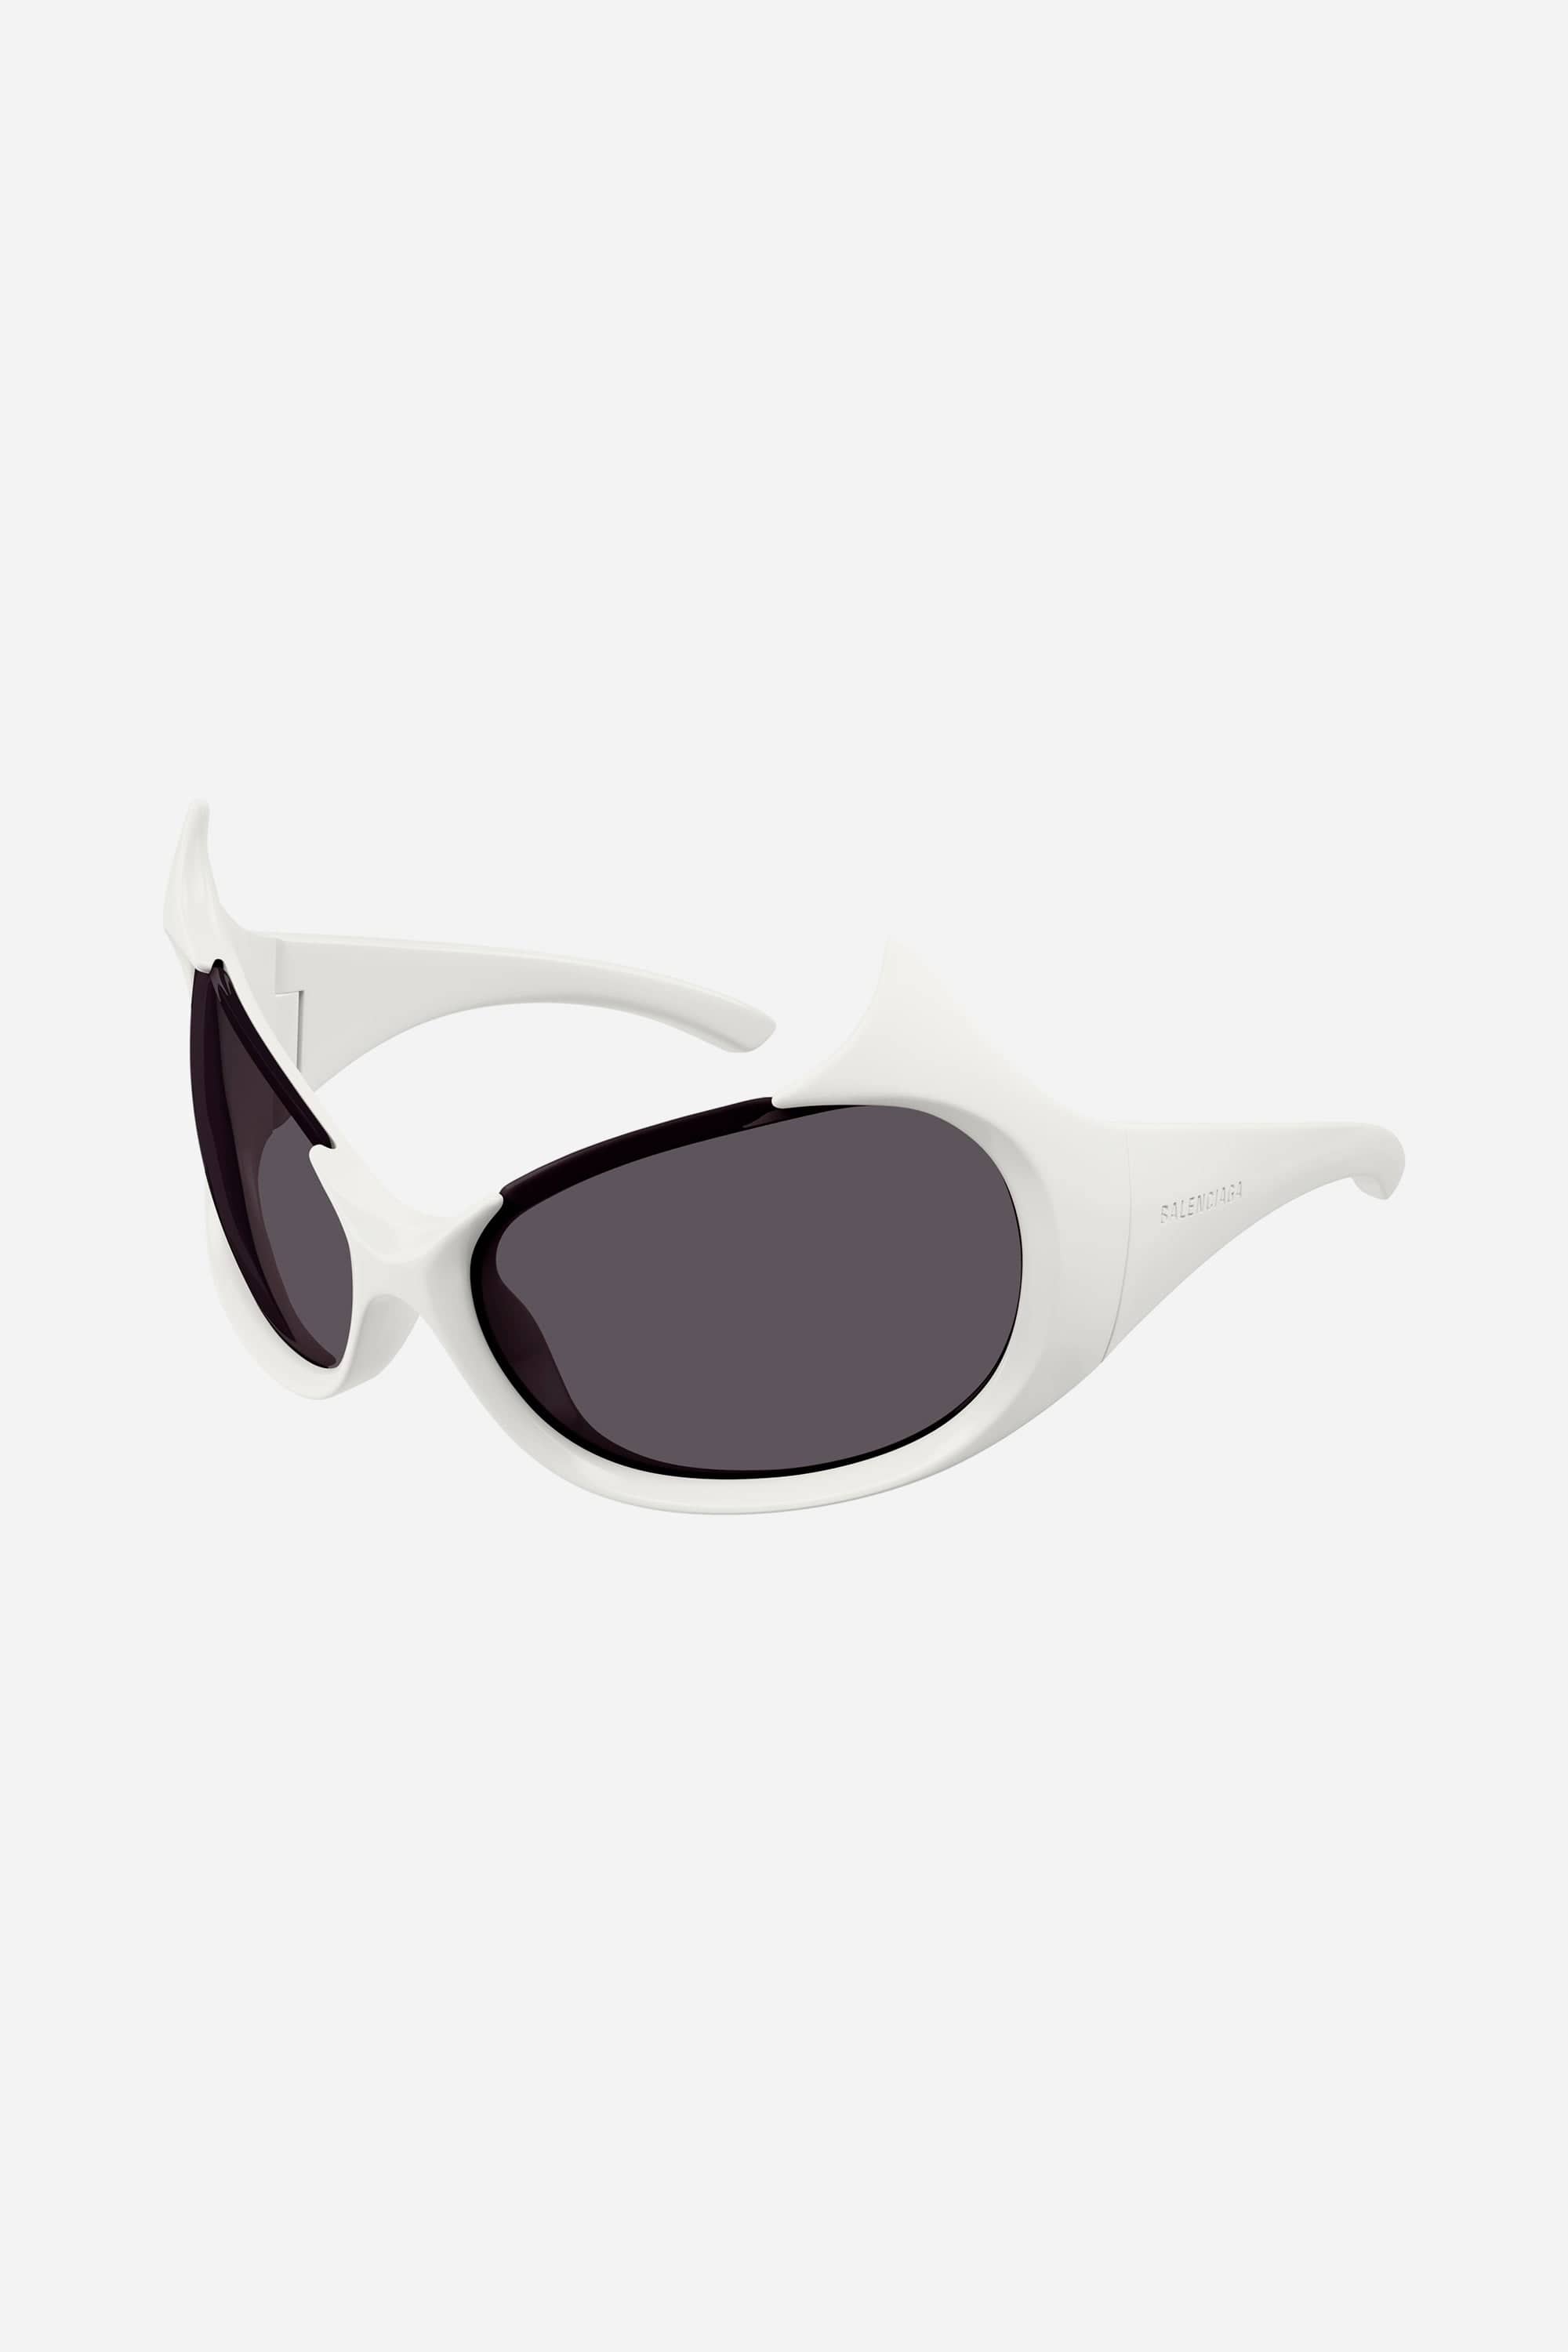 Balenciaga GOTHAM cat sunglasses in white - Eyewear Club